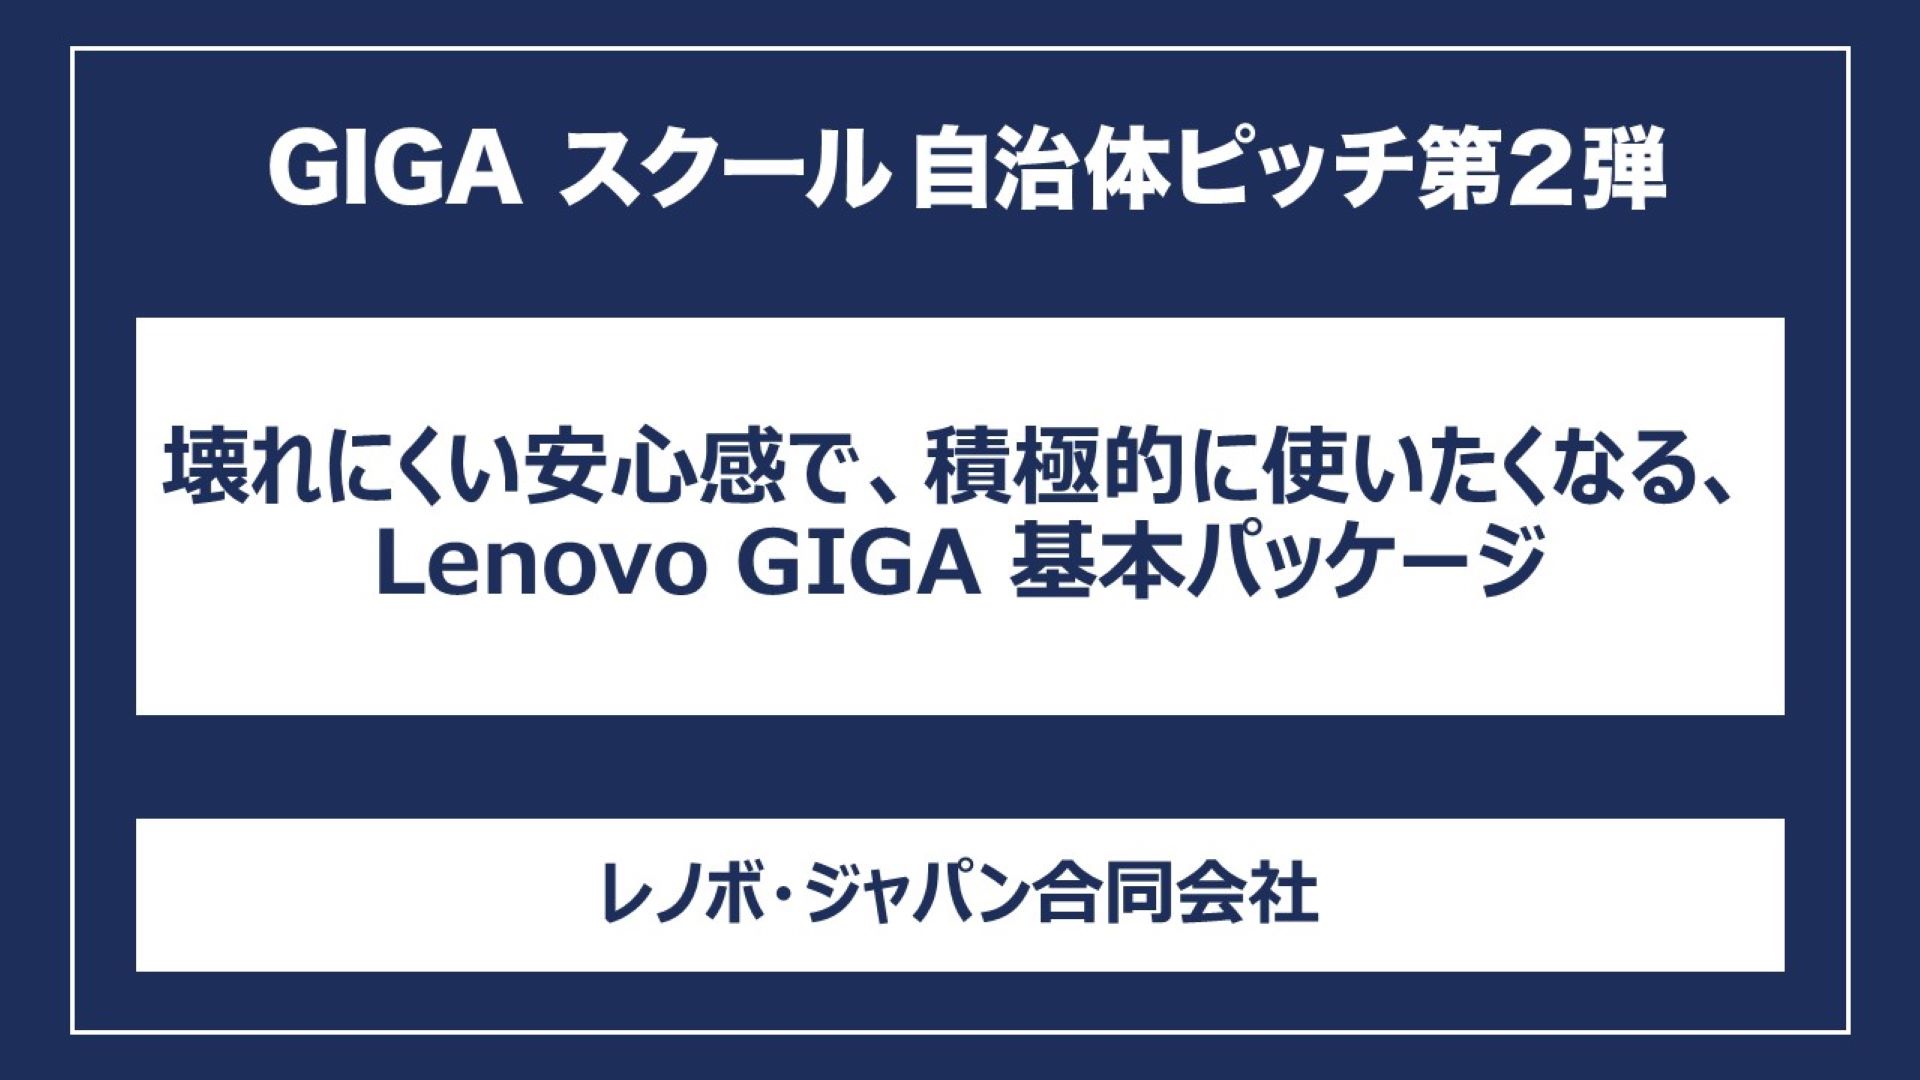 壊れにくい安心感で、積極的に使いたくなる、Lenovo GIGA 基本パッケージ